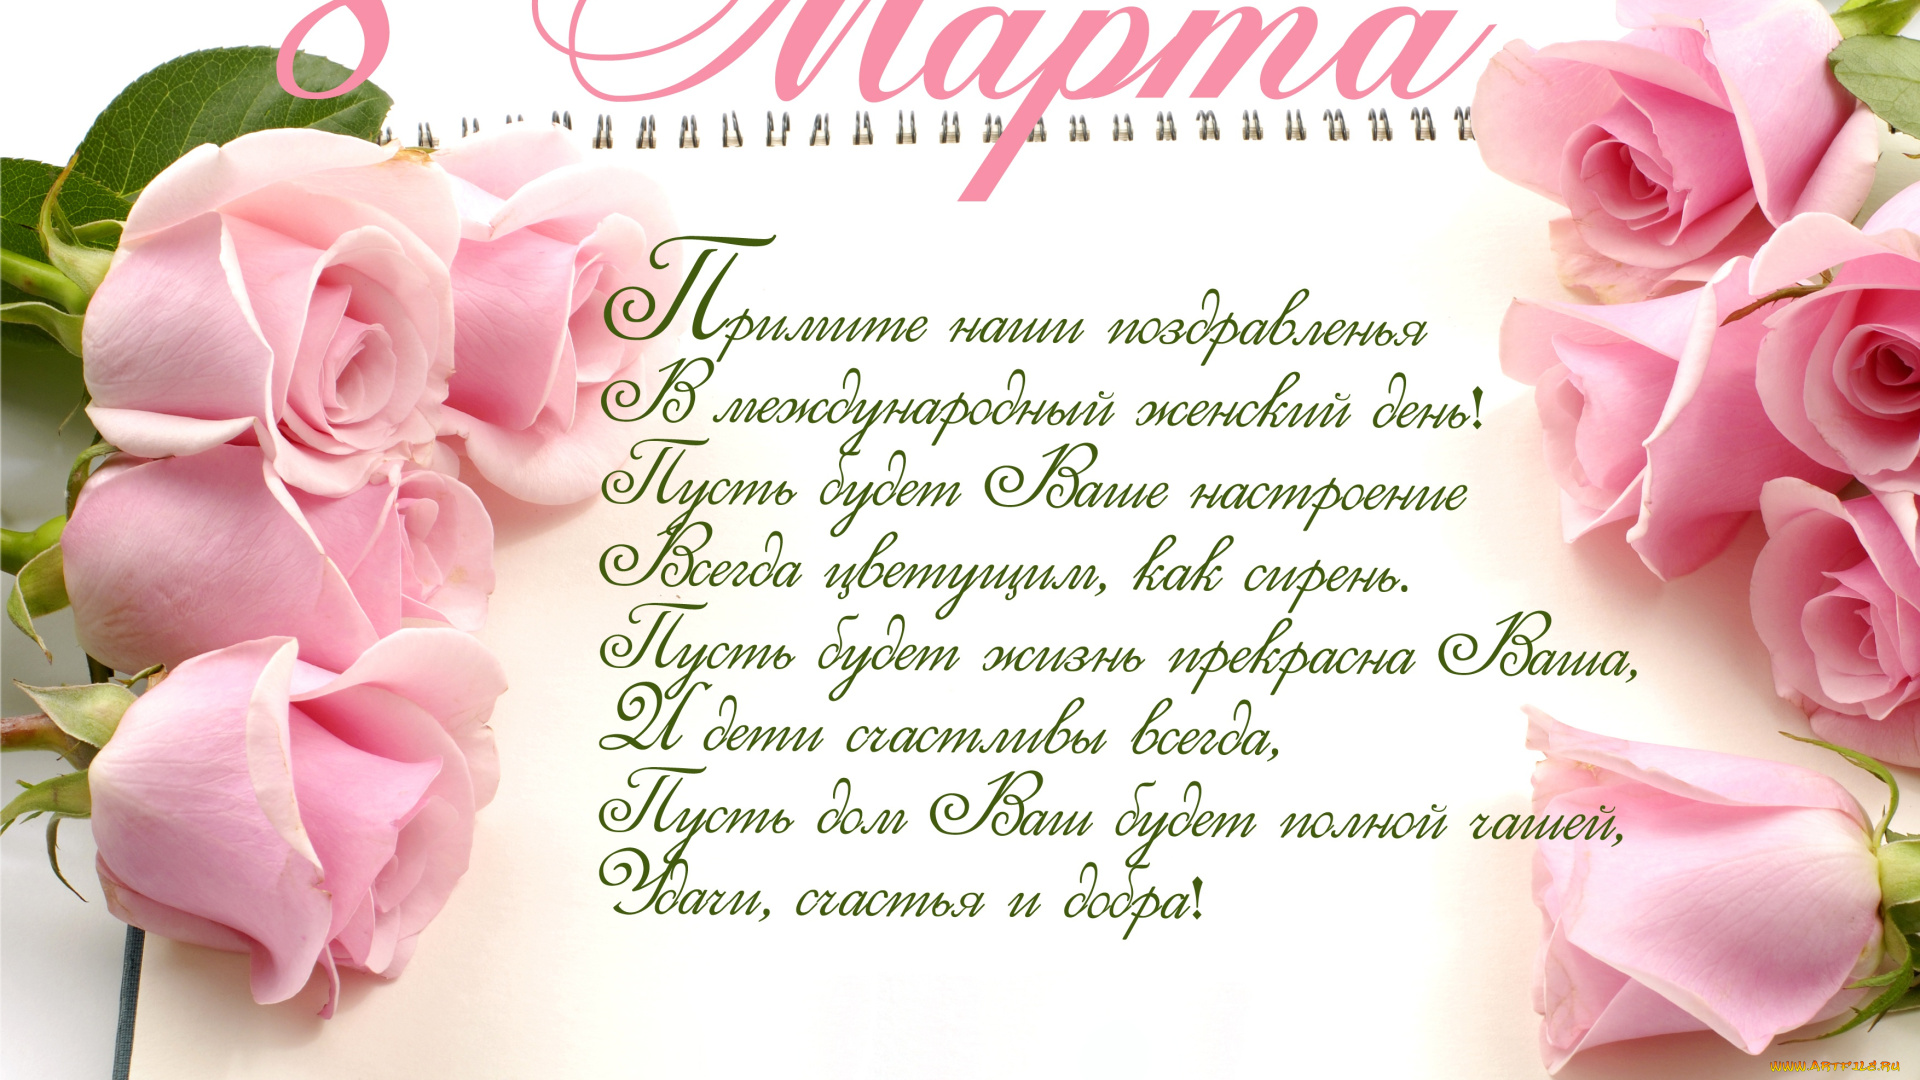 праздничные, международный, женский, день, -, 8, марта, весна, розы, roses, holiday, spring, romantic, поздравление, 8, марта